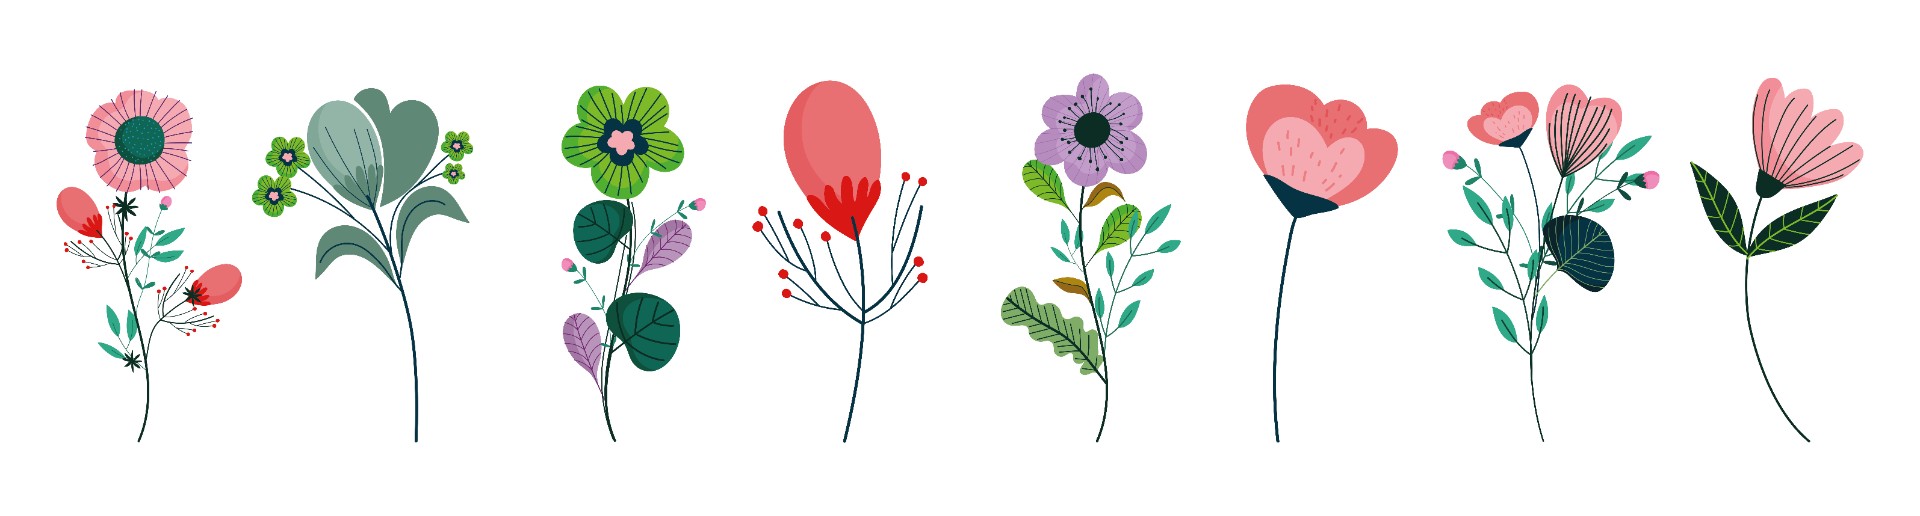 各种平面花朵插图0